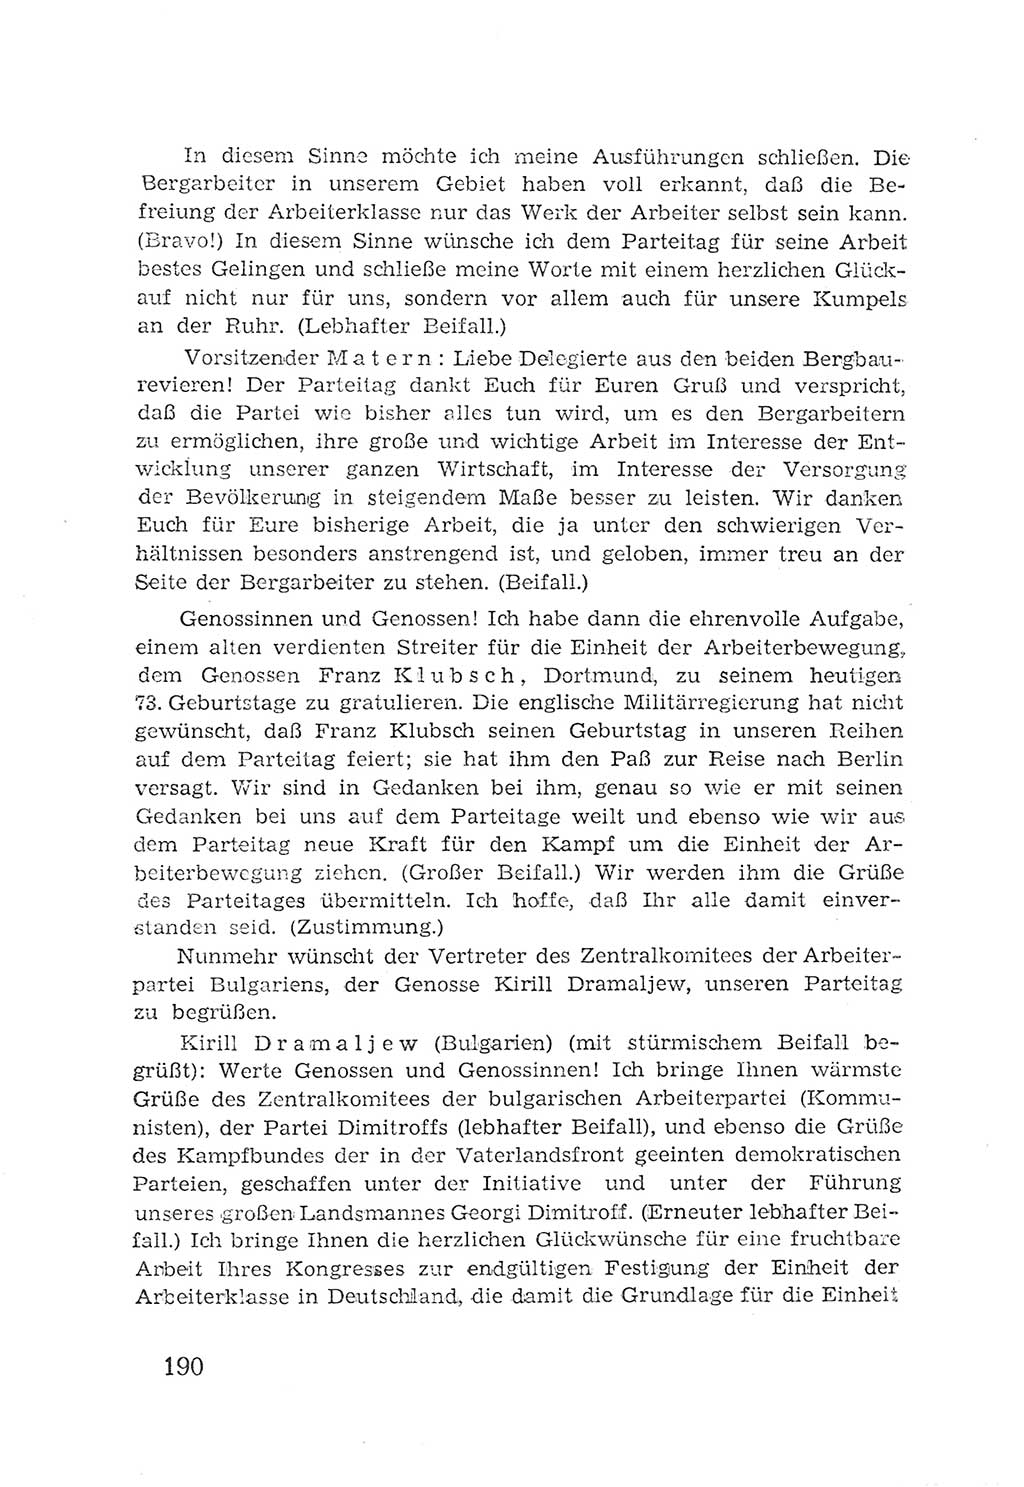 Protokoll der Verhandlungen des 2. Parteitages der Sozialistischen Einheitspartei Deutschlands (SED) [Sowjetische Besatzungszone (SBZ) Deutschlands] 1947, Seite 190 (Prot. Verh. 2. PT SED SBZ Dtl. 1947, S. 190)